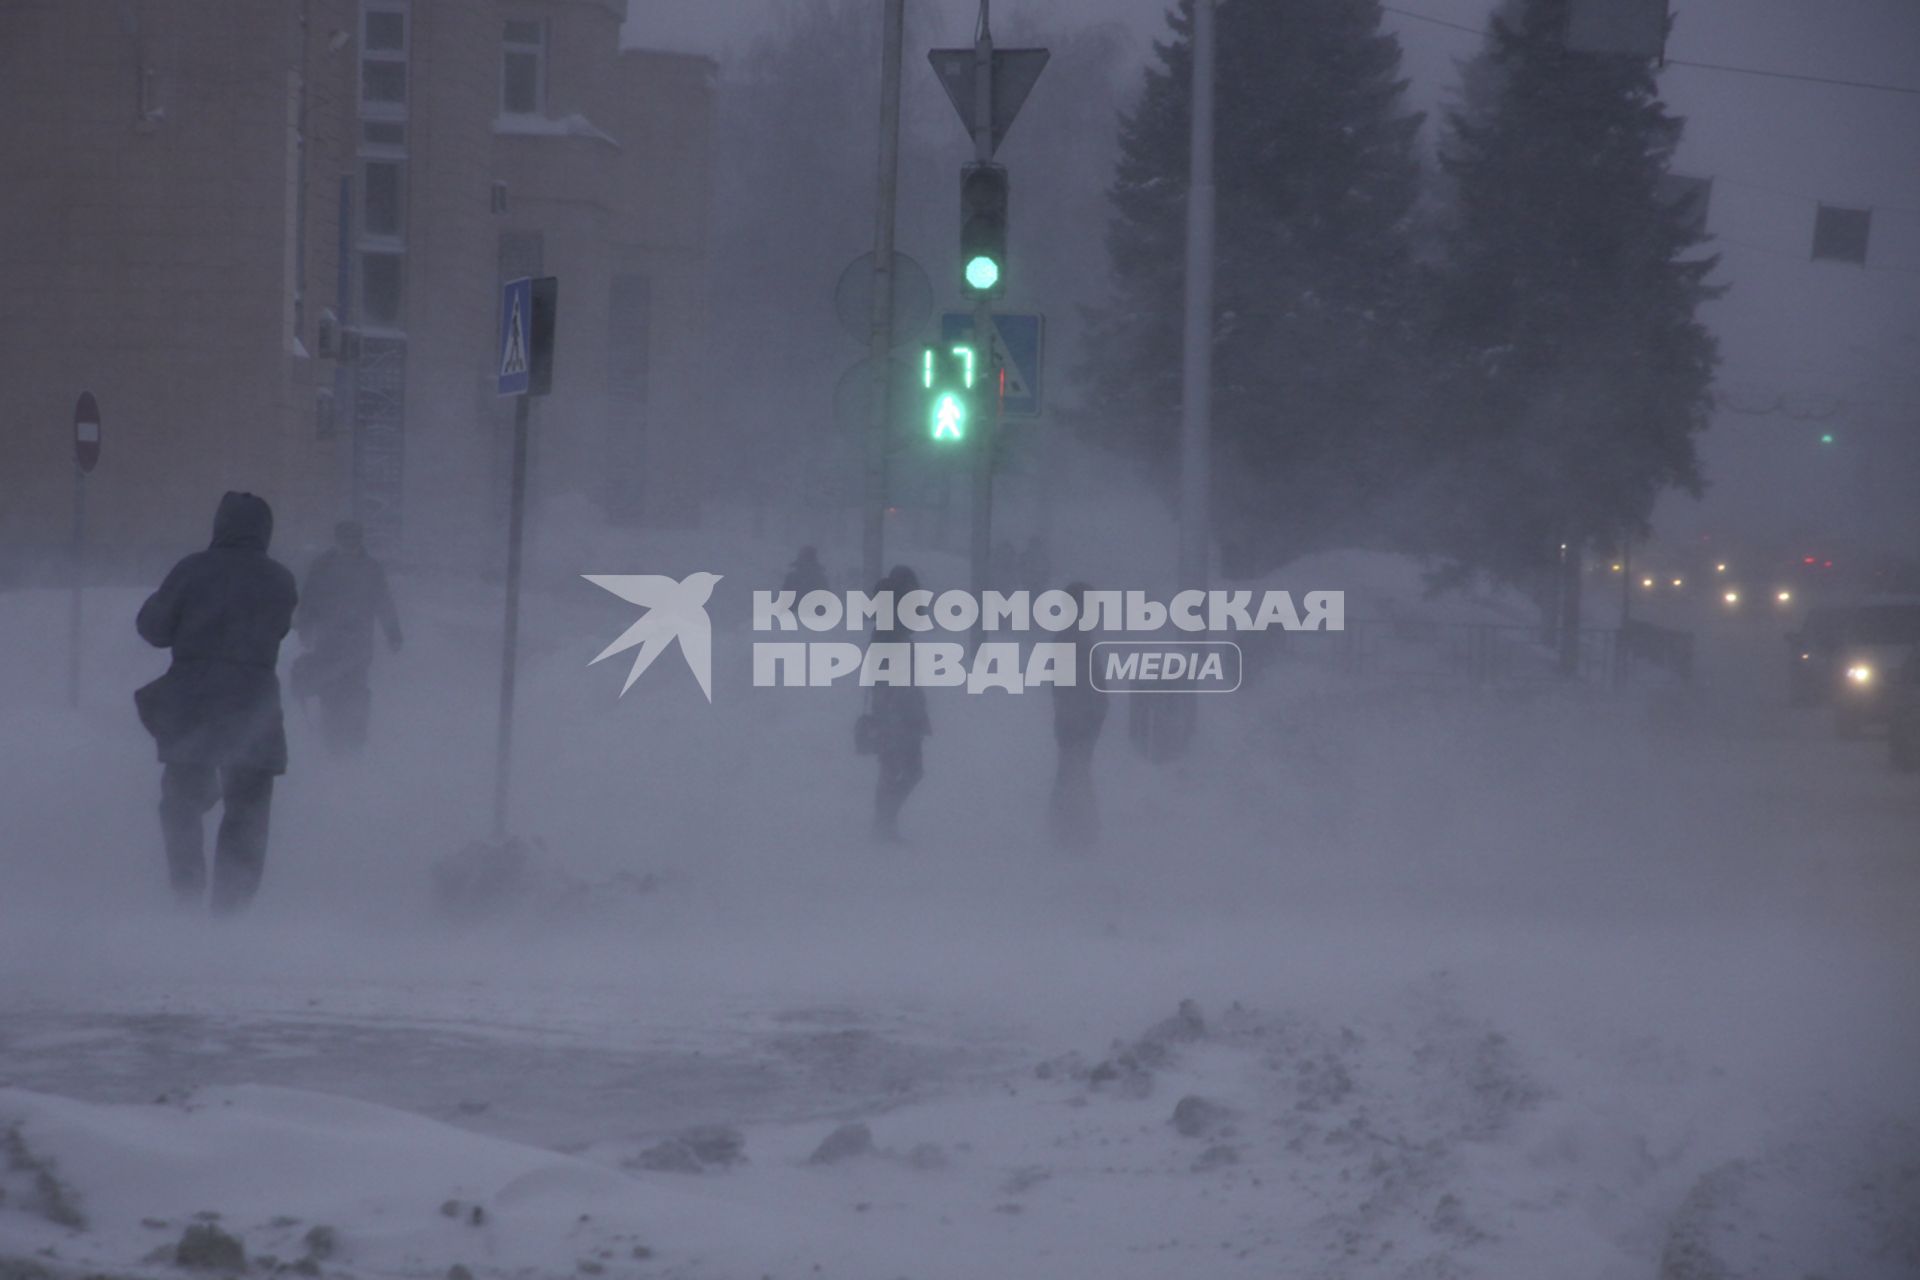 Барнаул. Прохожие на улице во время метели.